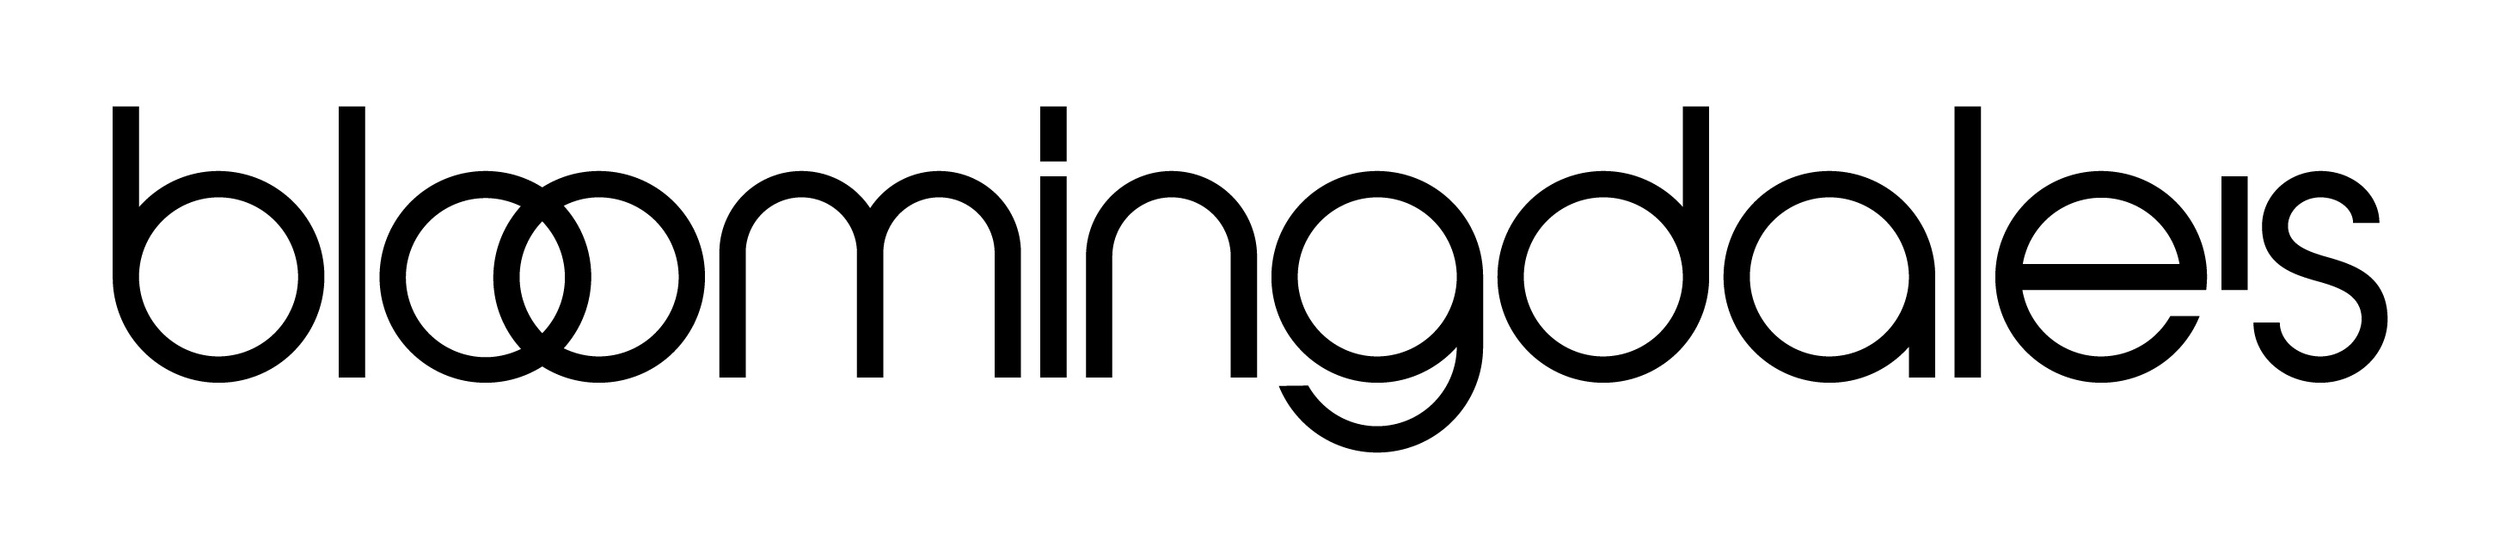 bloomingdales-logo.jpg